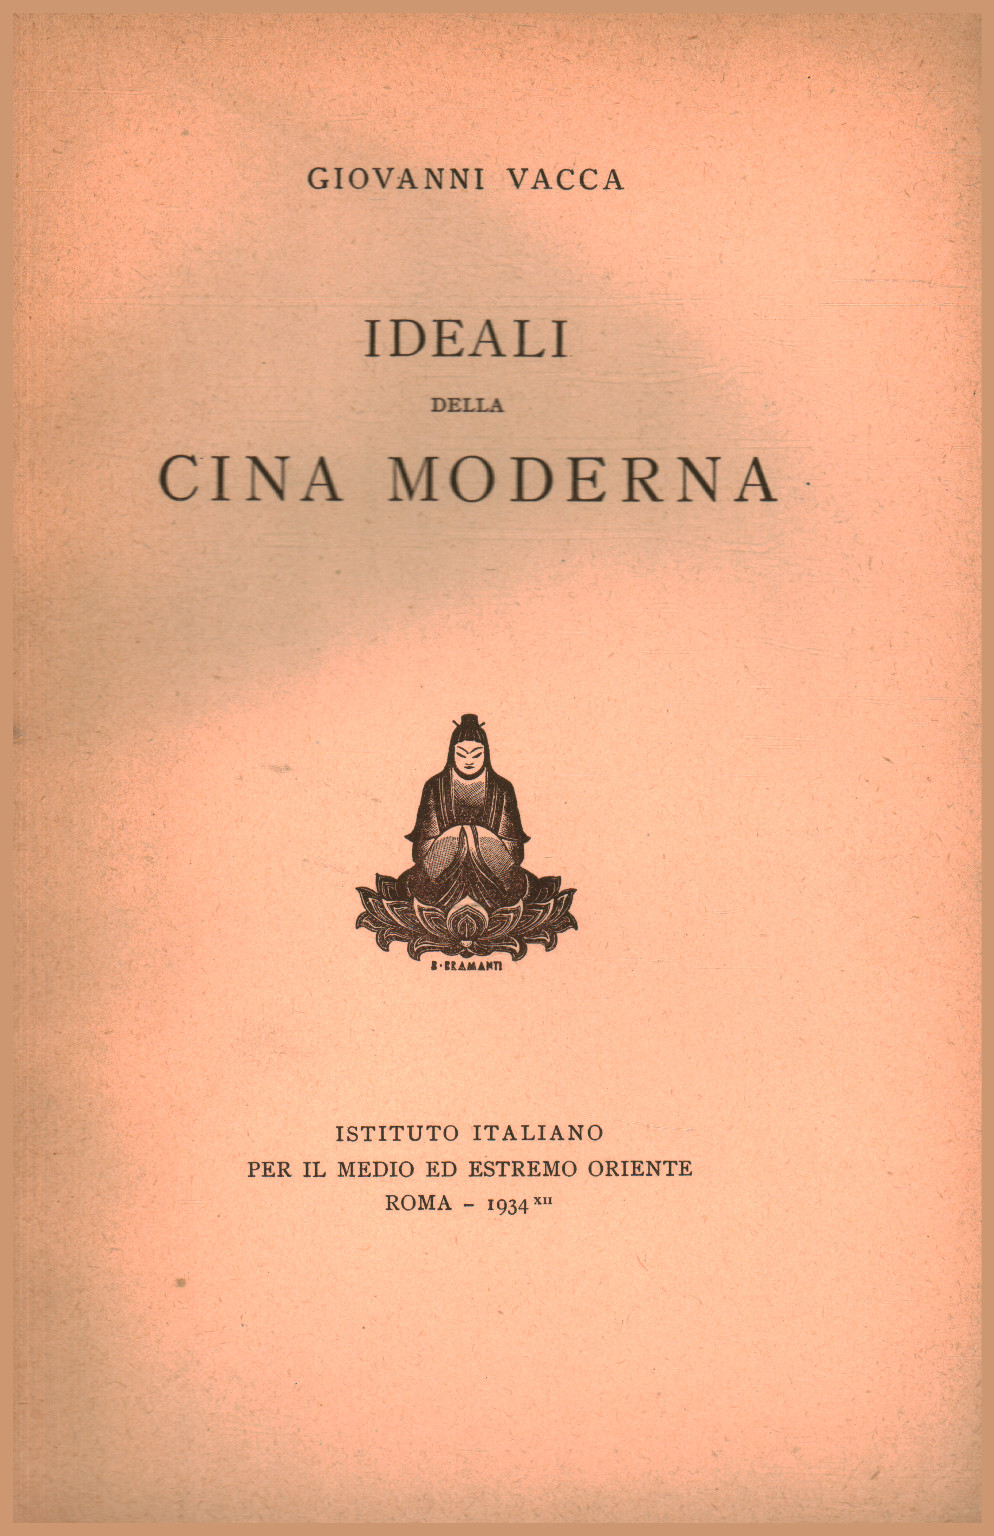 Ideales de la China moderna, Giovanni Vacca